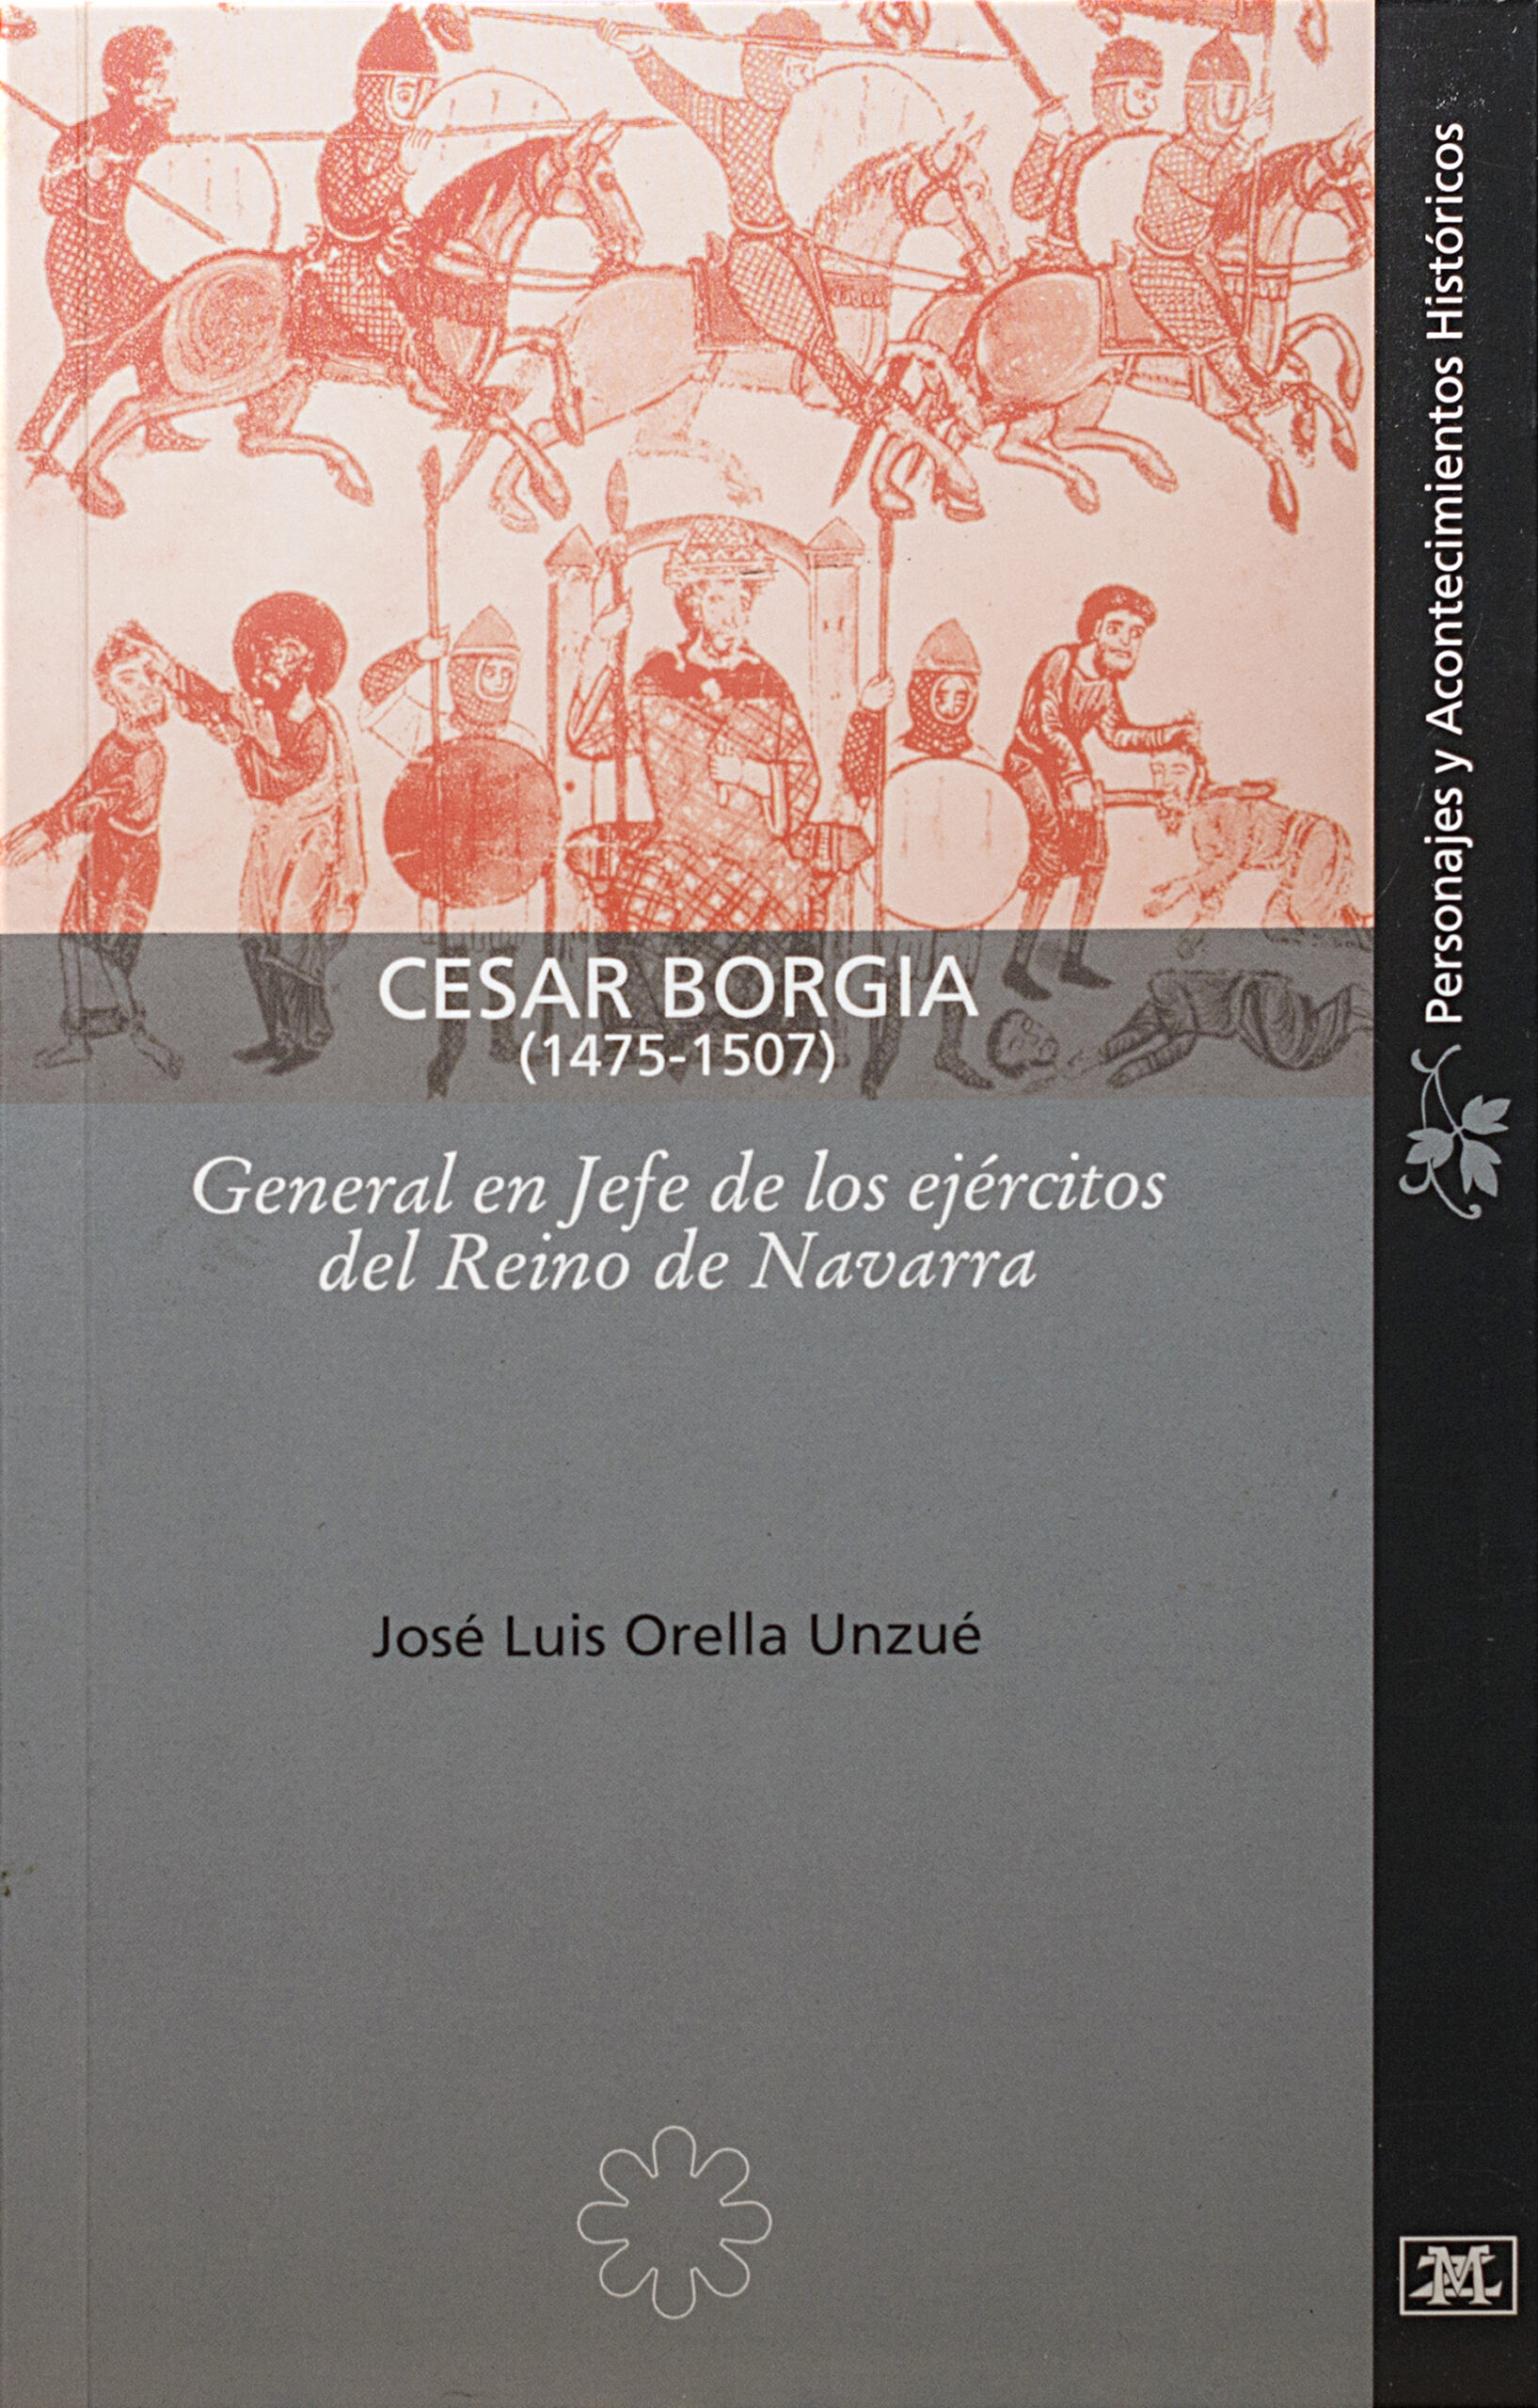 CESAR BORGIA | General en jefe de los ejércitos de Navarra.